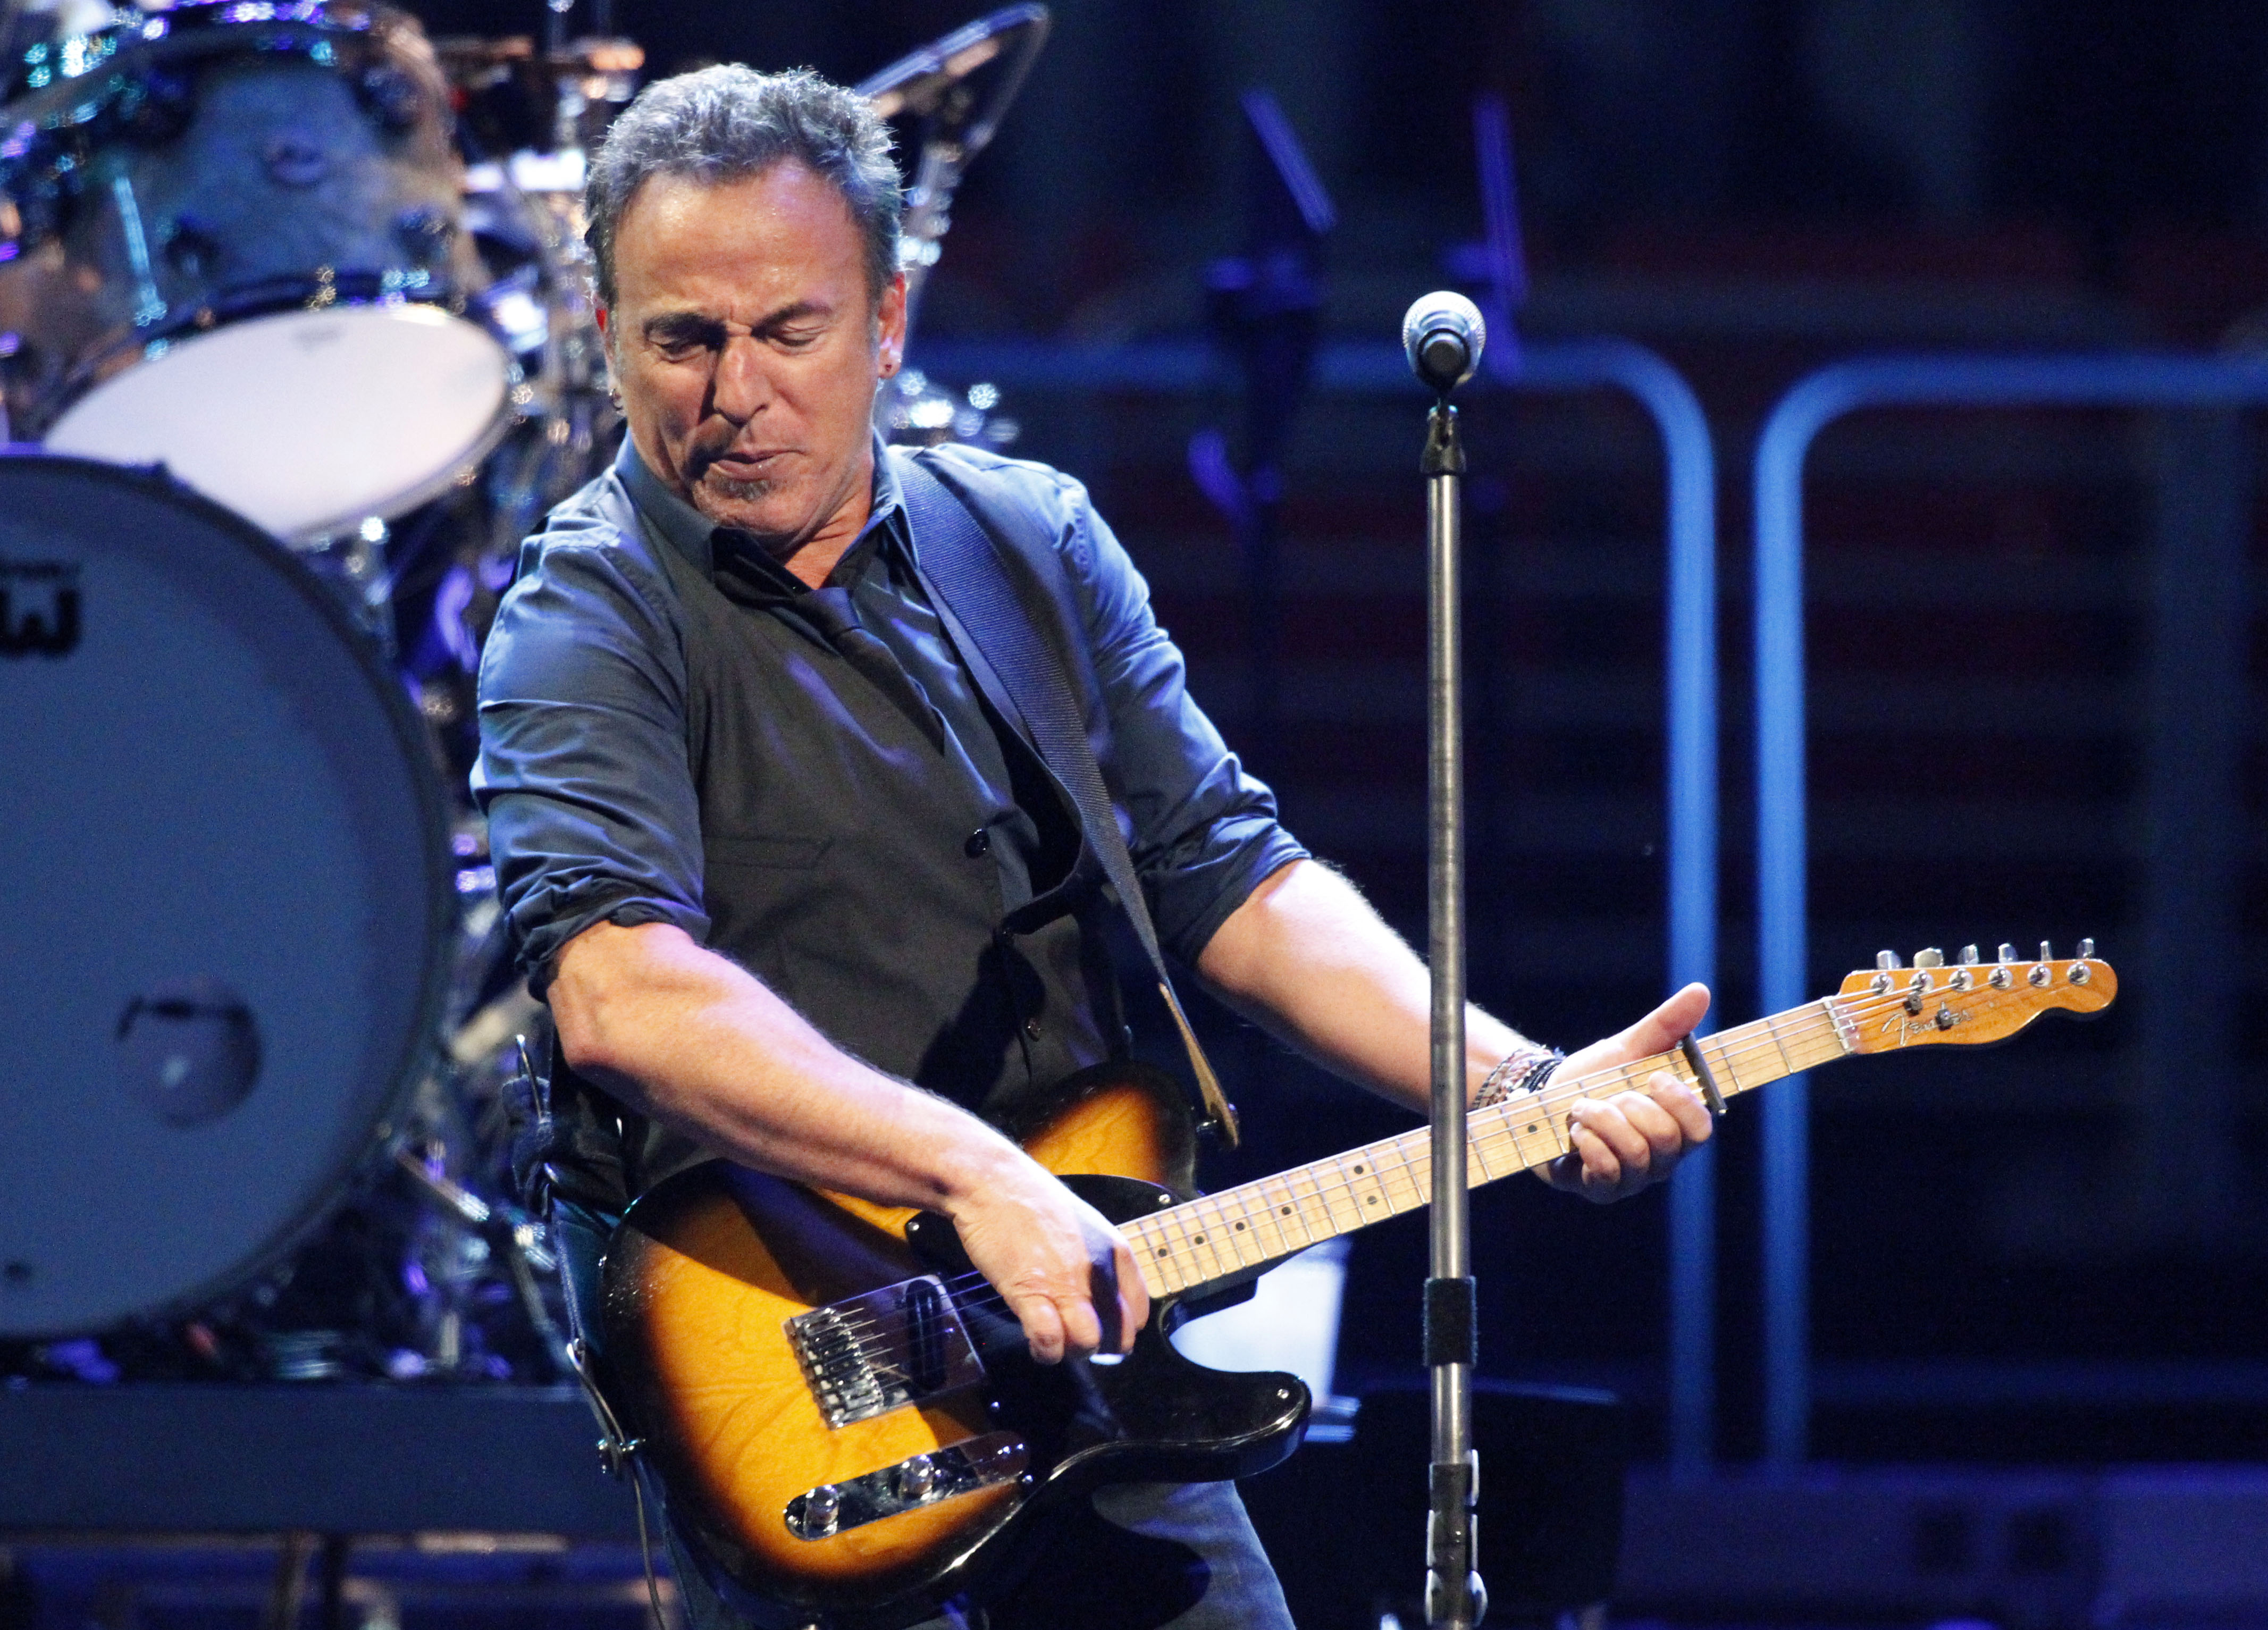 "Jag säger att det är jag och Springsteen som spelar på Ullevi numera."